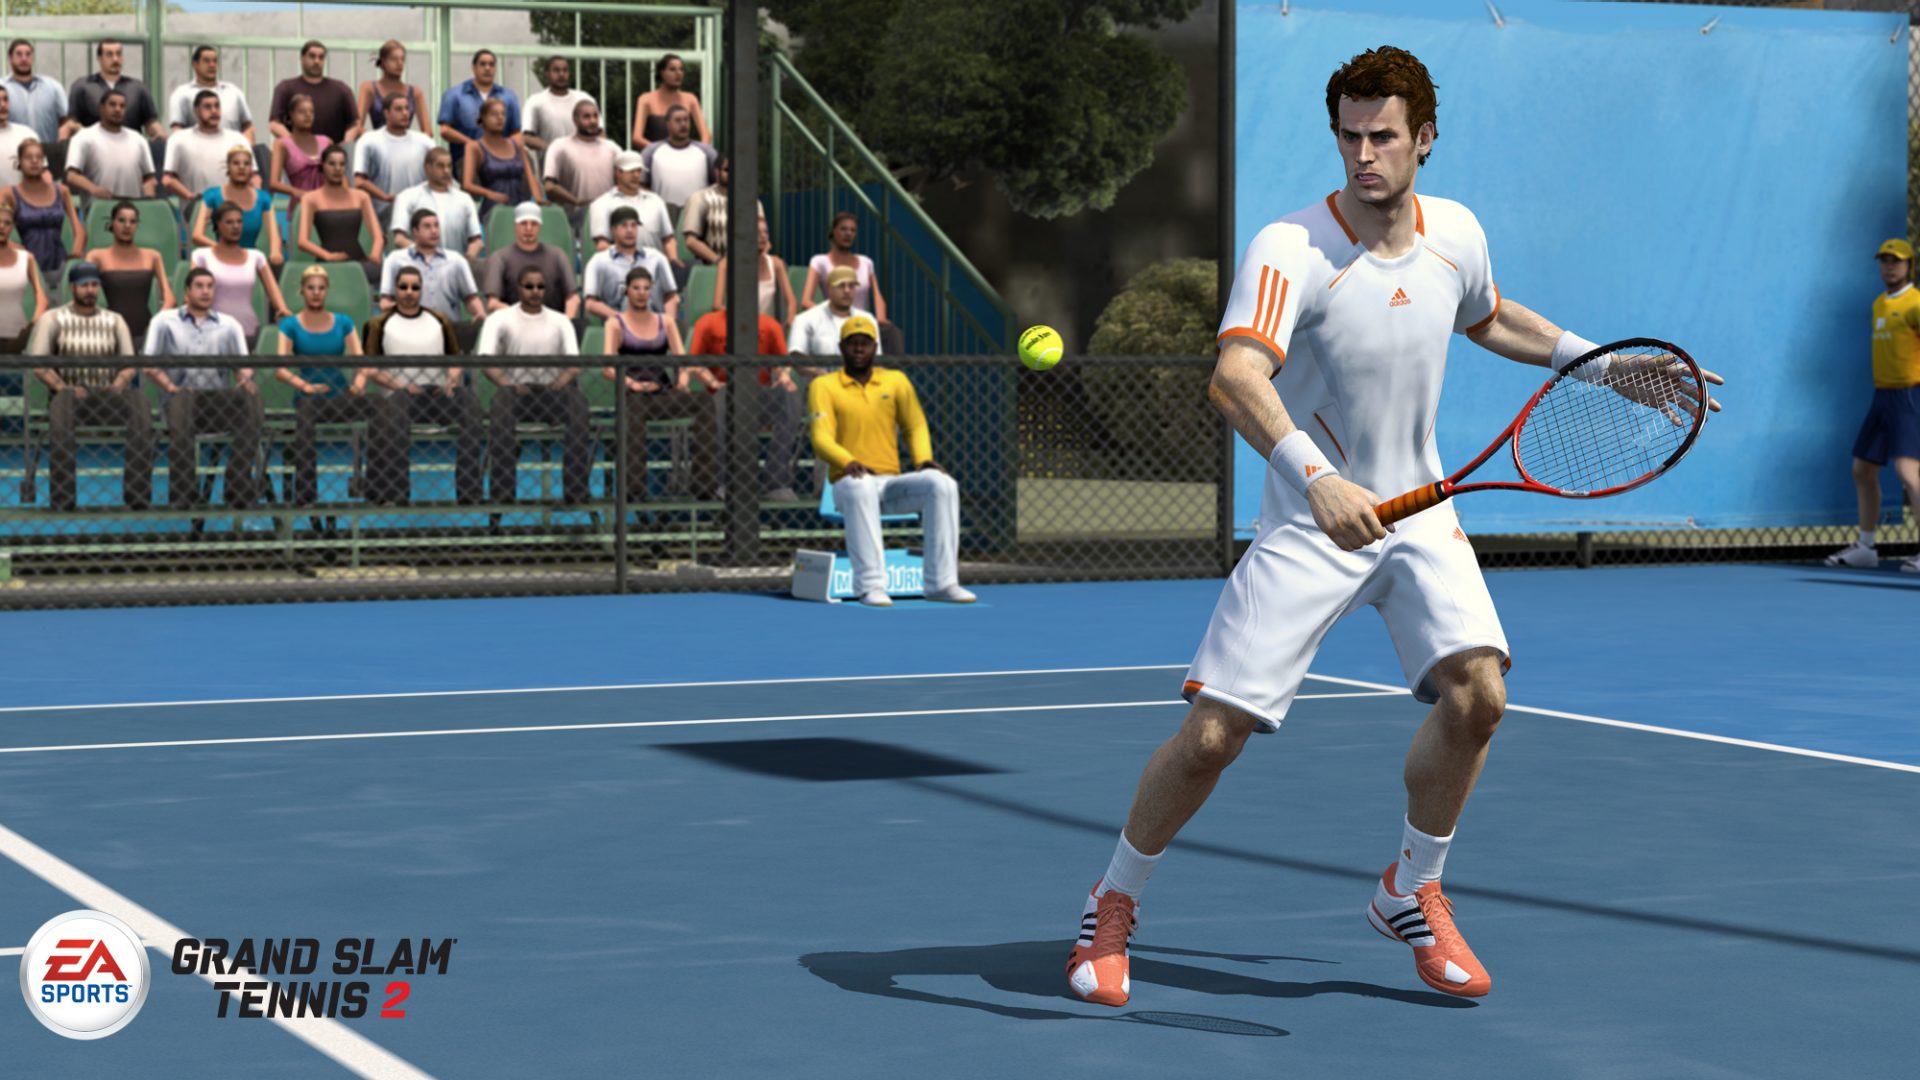 Теннис игра любителей. Grand Slam Tennis. Grand Slam Tennis 2 игра. Игра на Xbox 360 Grand Slam Tennis 2. ПС 3 теннис 2.